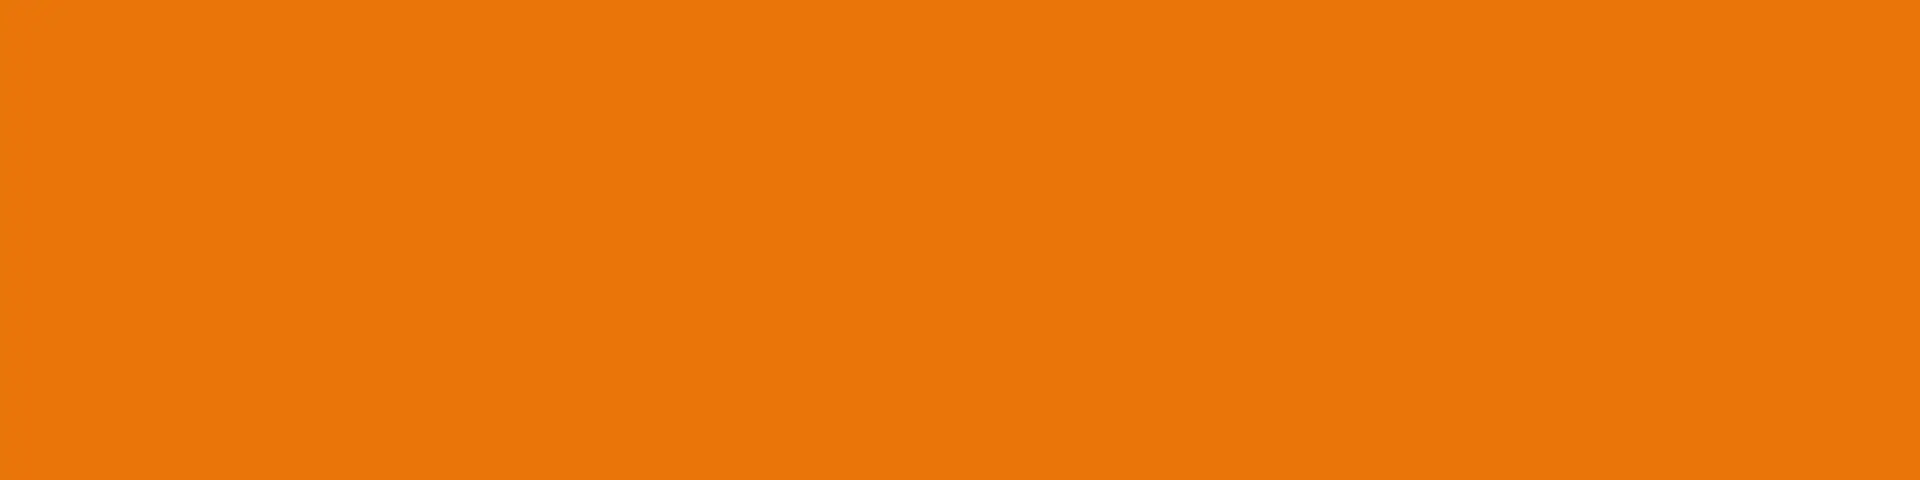 Orange bakgrund